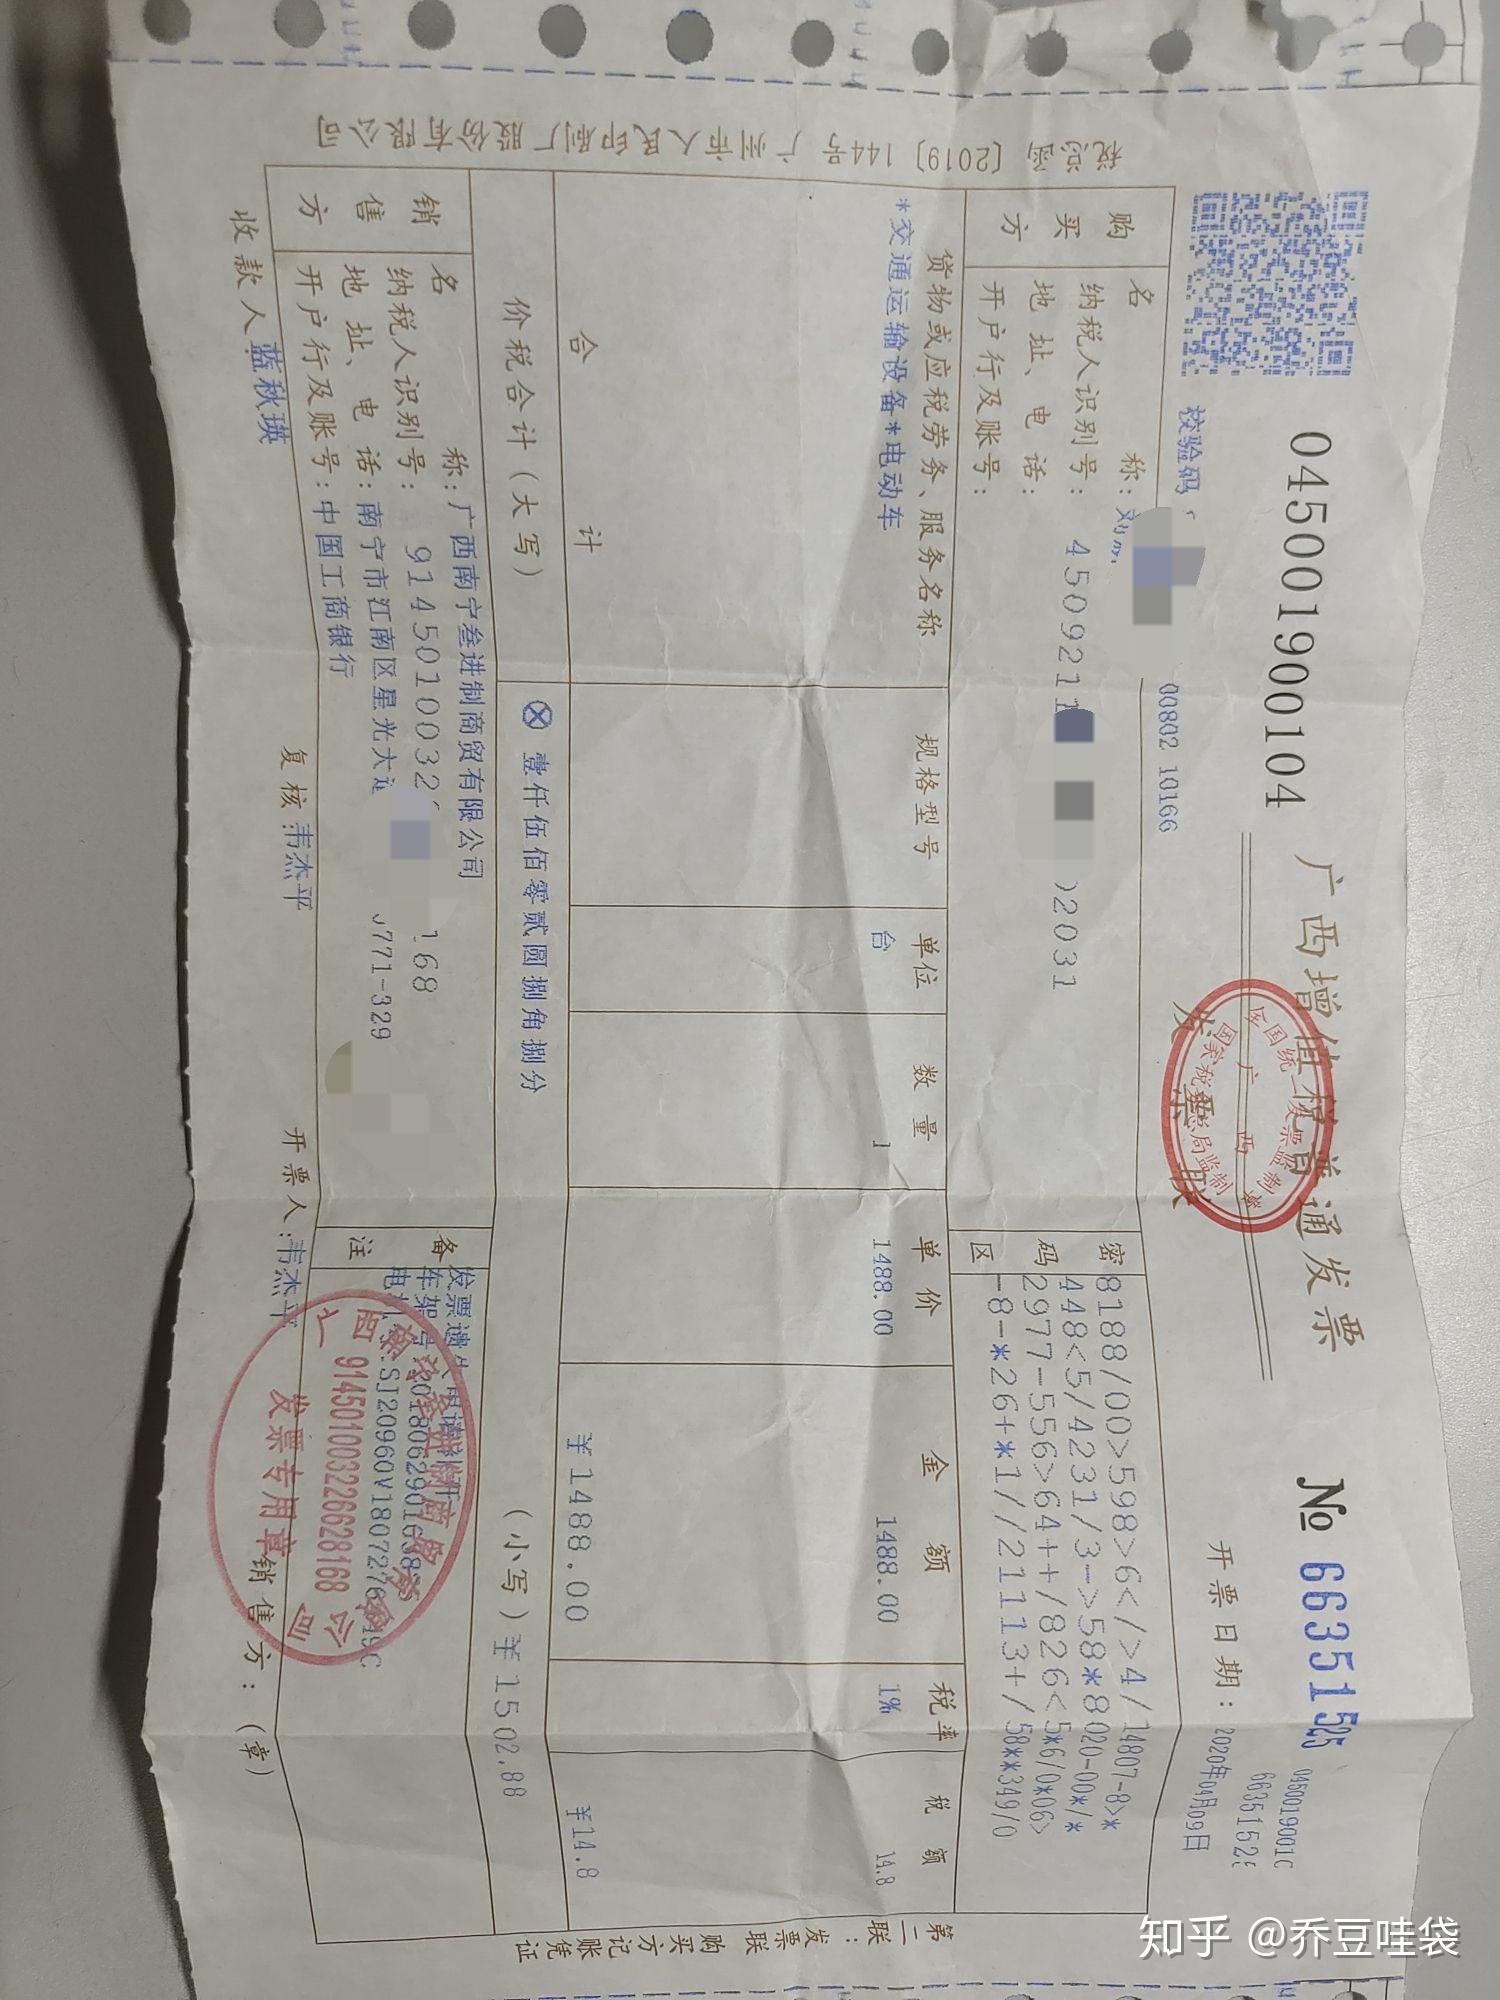 广州电动车发票图片